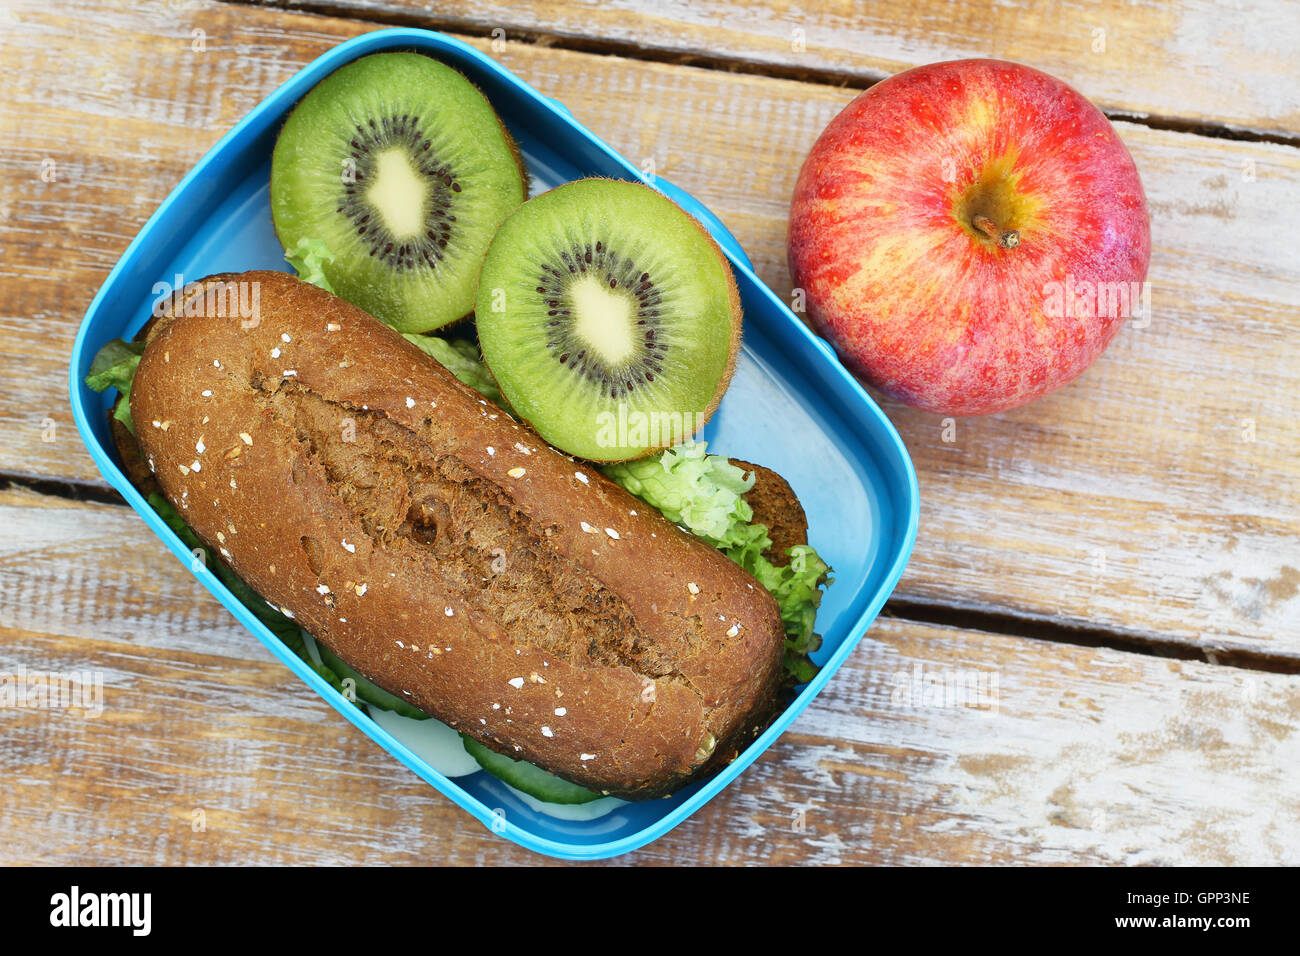 Pranzo al sacco contenente marrone sandwich di pane, kiwi e apple su rustiche superficie in legno Foto Stock